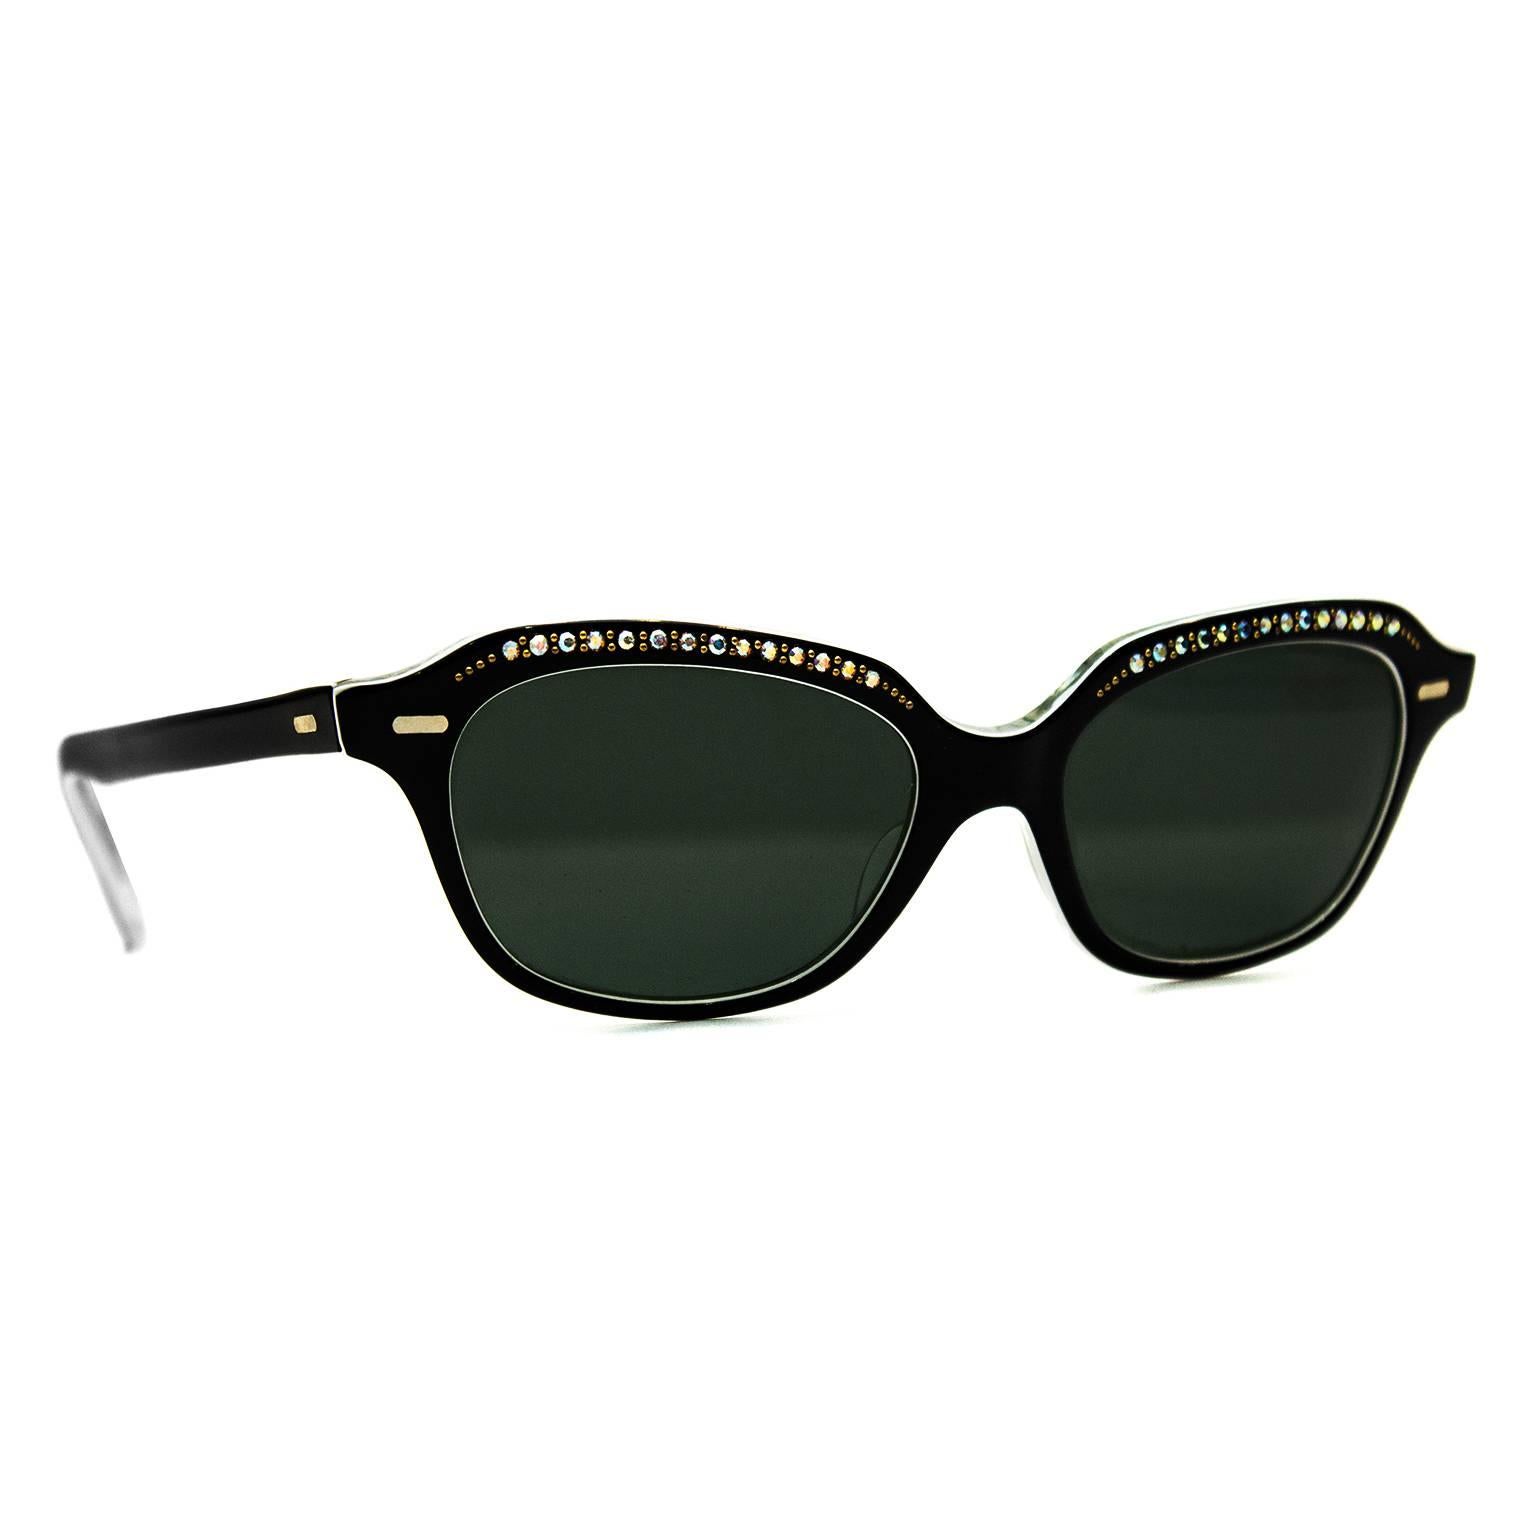 Sun Rite-Sonnenbrille aus den 1950er Jahren. Schwarzes Harz mit winzigen goldenen Perlen und schillernden Strasssteinen verziert. Schwarz/grünes Glas. Sehr schöner, ausgezeichneter Vintage-Zustand. Keine Schachtel oder Etui enthalten. 